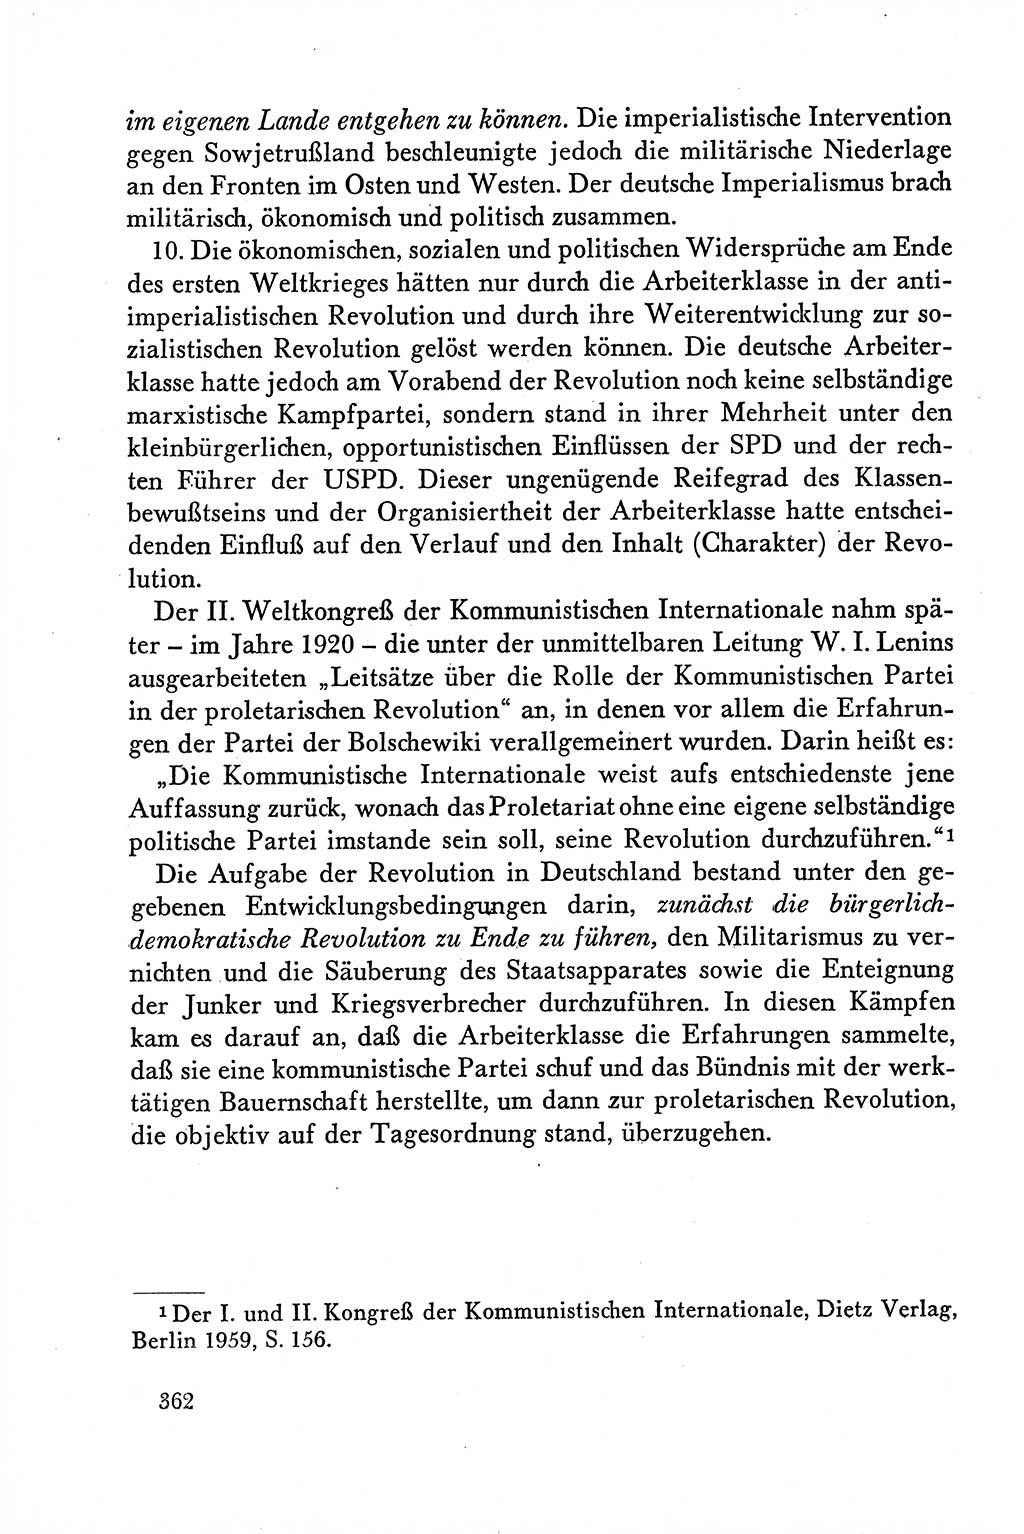 Dokumente der Sozialistischen Einheitspartei Deutschlands (SED) [Deutsche Demokratische Republik (DDR)] 1958-1959, Seite 362 (Dok. SED DDR 1958-1959, S. 362)